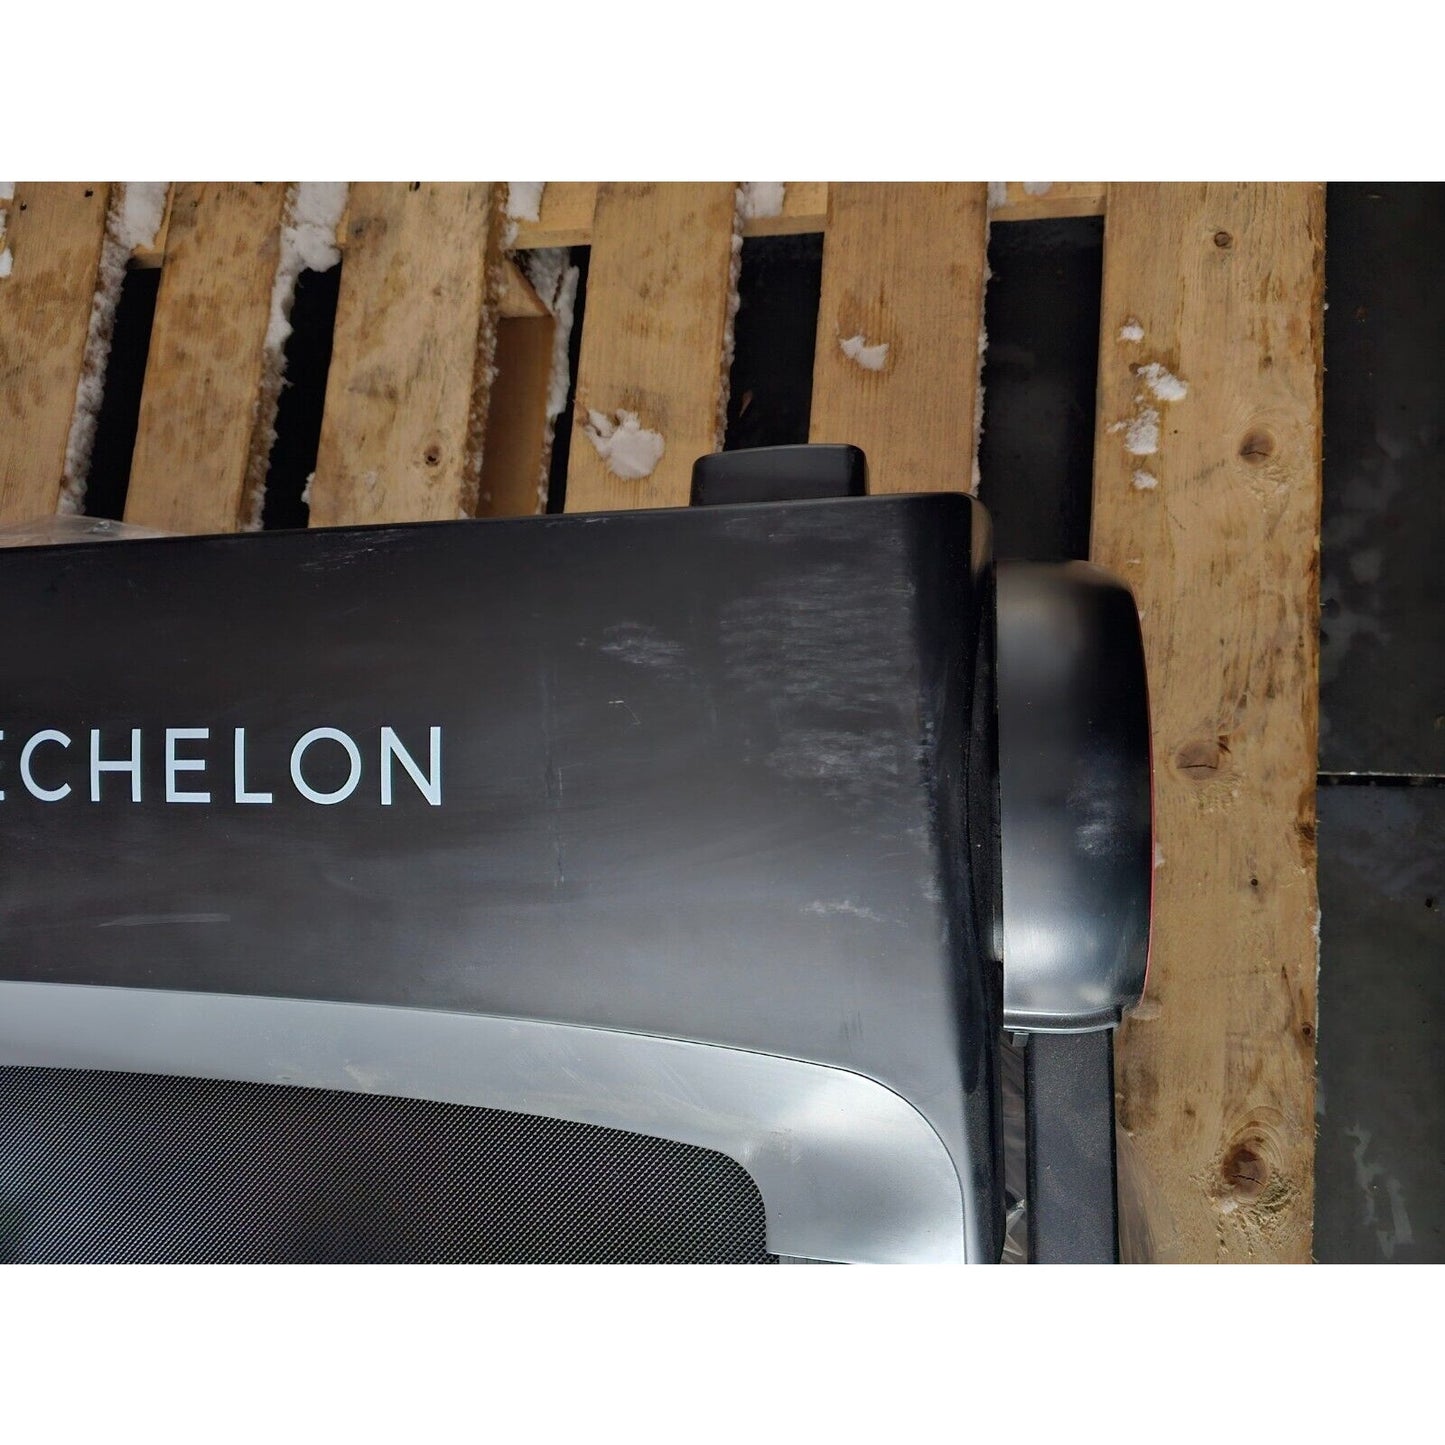 Echelon Stride S Treadmill, Auto Folds, Space Saver- Scuffed